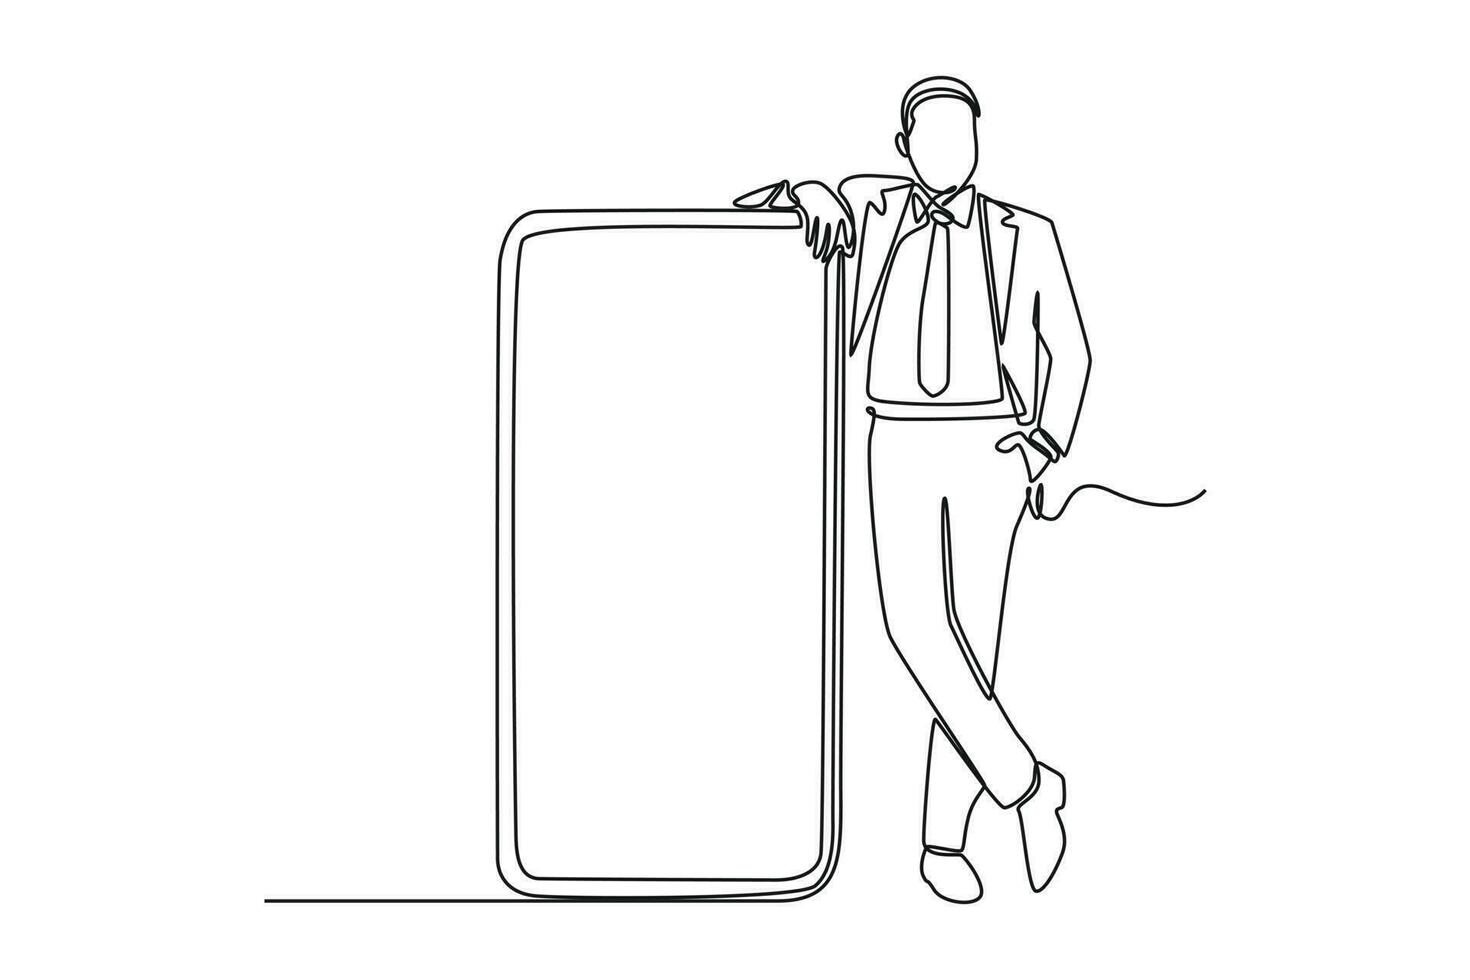 doorlopend een lijn tekening gelukkig mensen tonen mobiel telefoon schermen. Holding smartphone. smartphone concept. single lijn trek ontwerp vector grafisch illustratie.